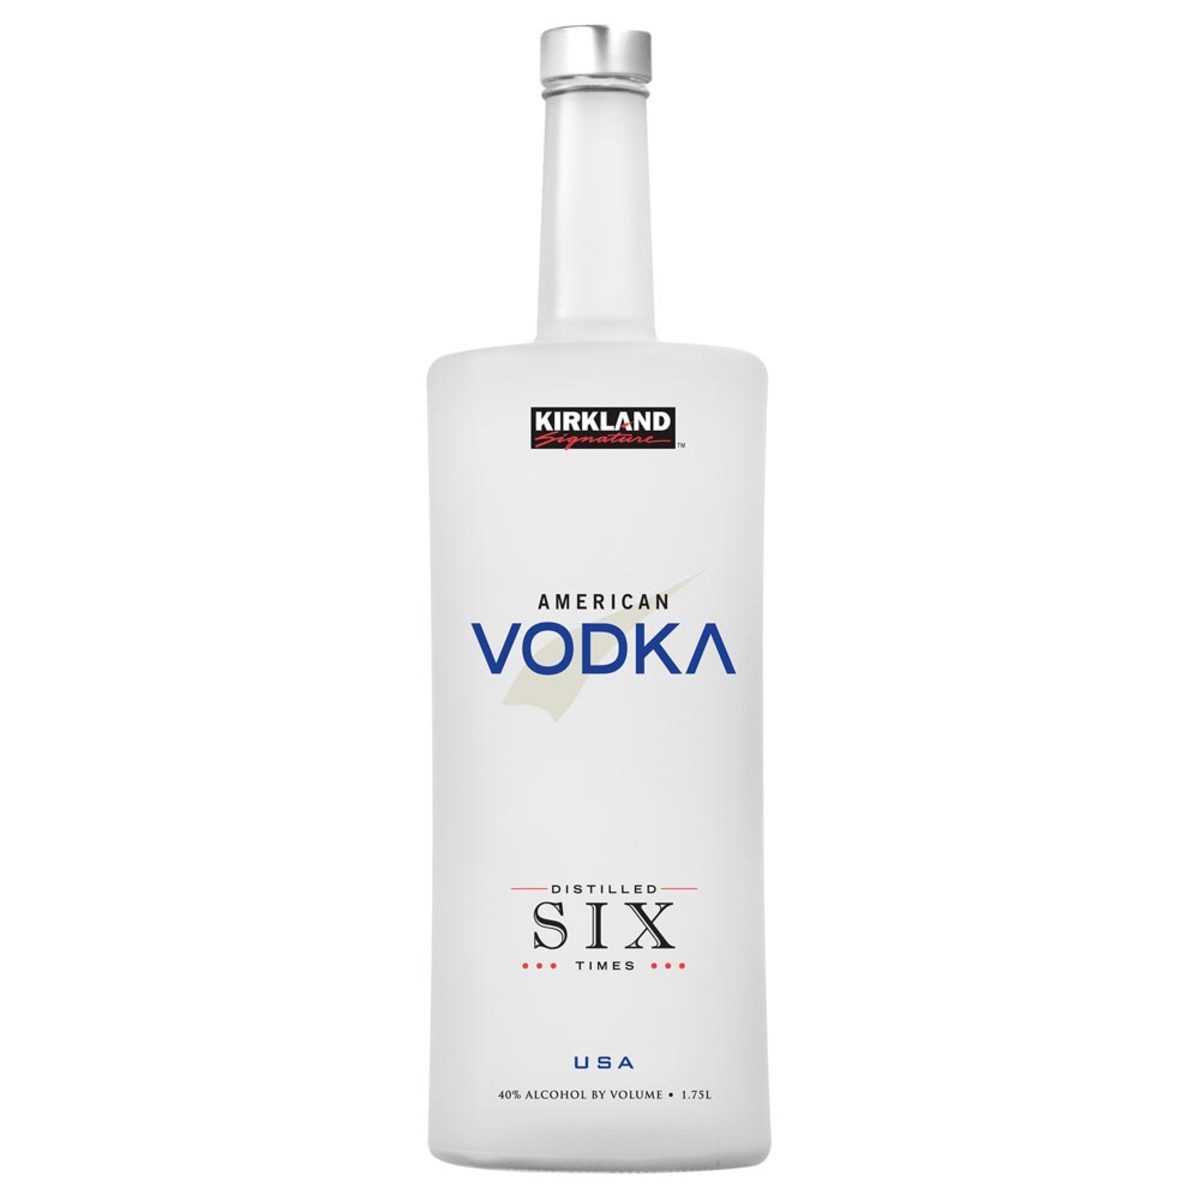 커클랜드 시그니춰 아메리칸 보드카 (Kirkland signature american USA vodka) | [술한잔] 알콜 ...